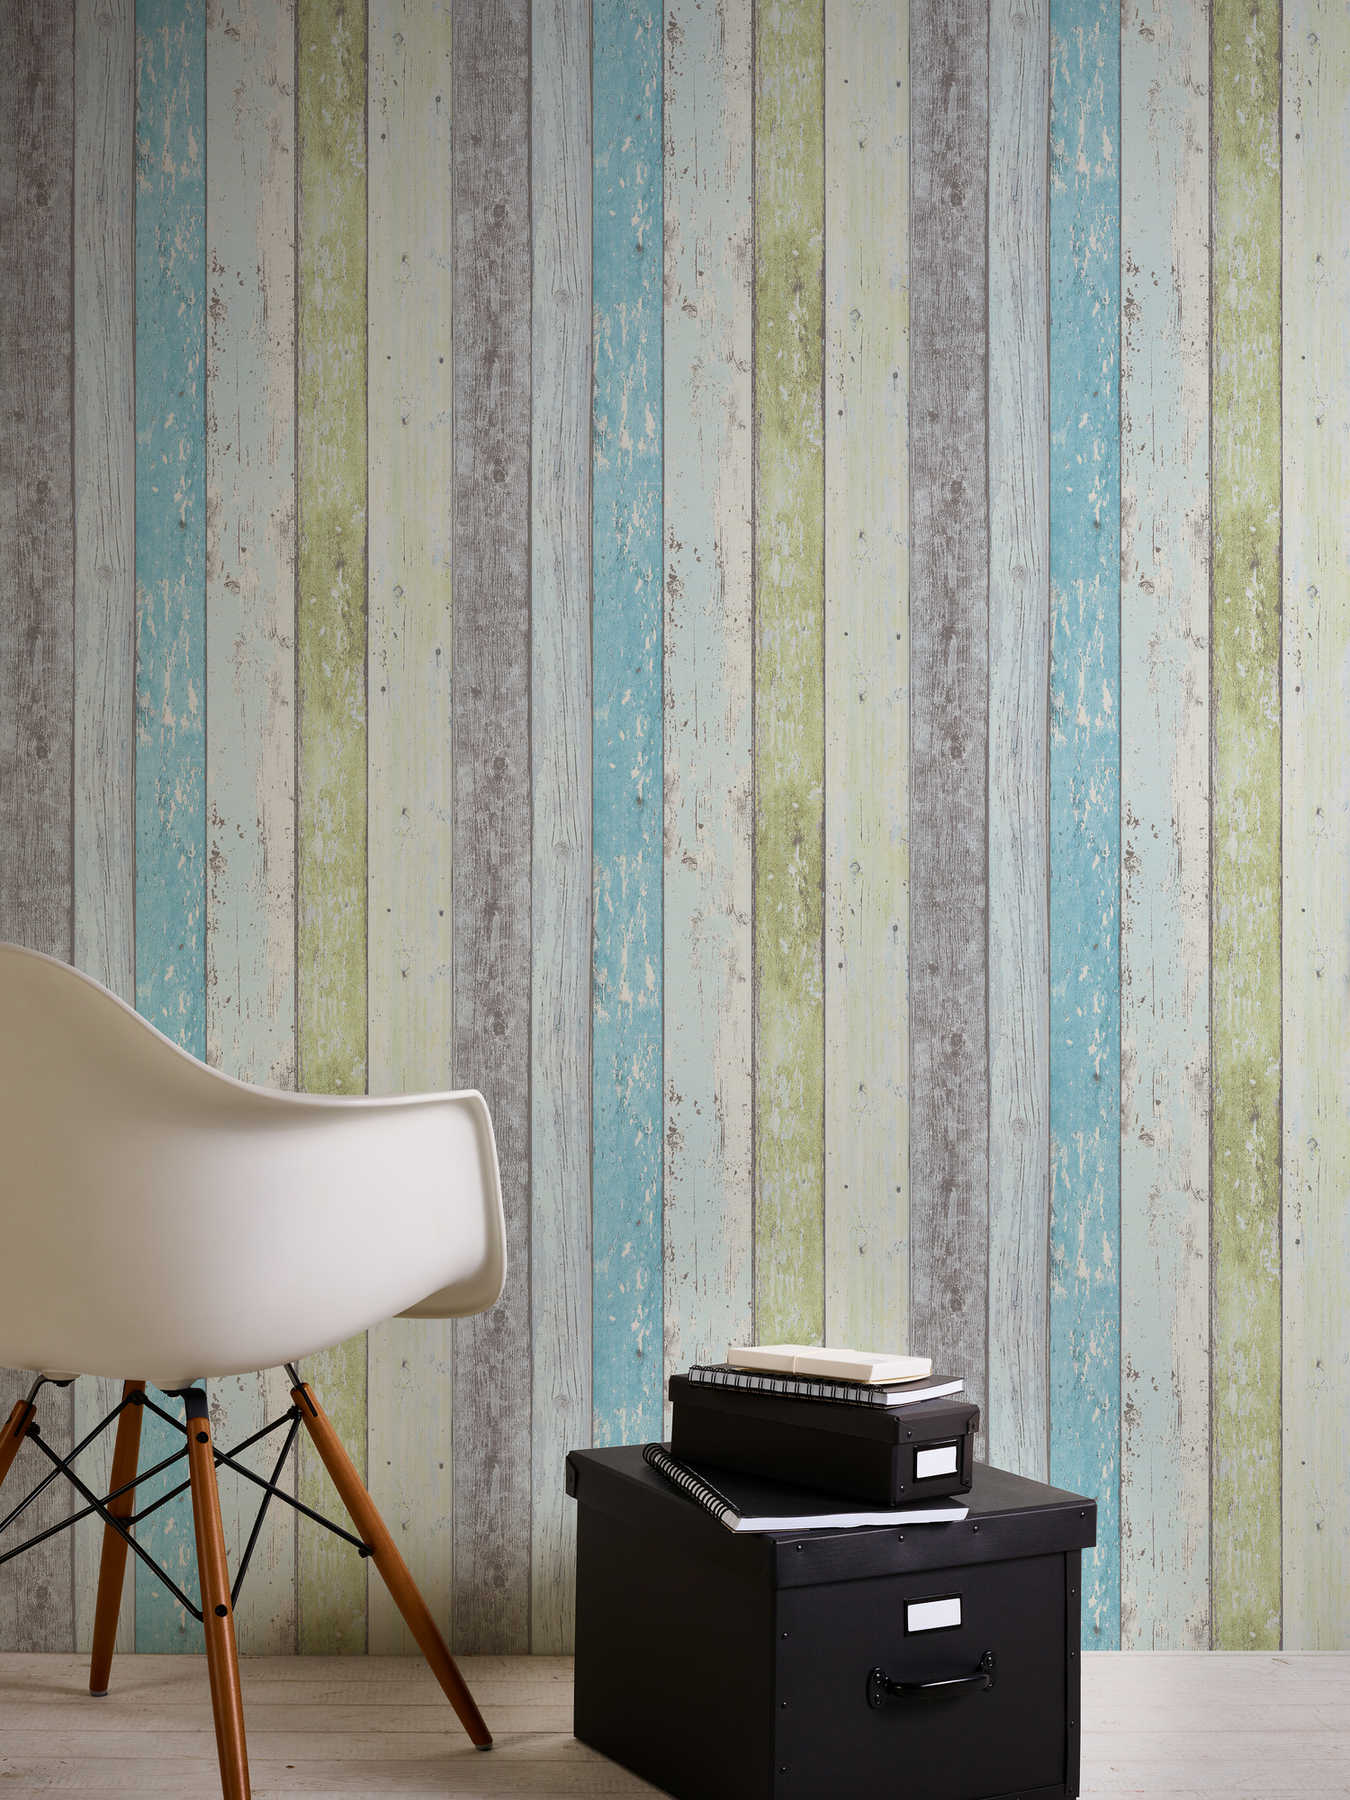             Houten behang met used look voor vintage & landelijke stijl - blauw, groen, wit
        